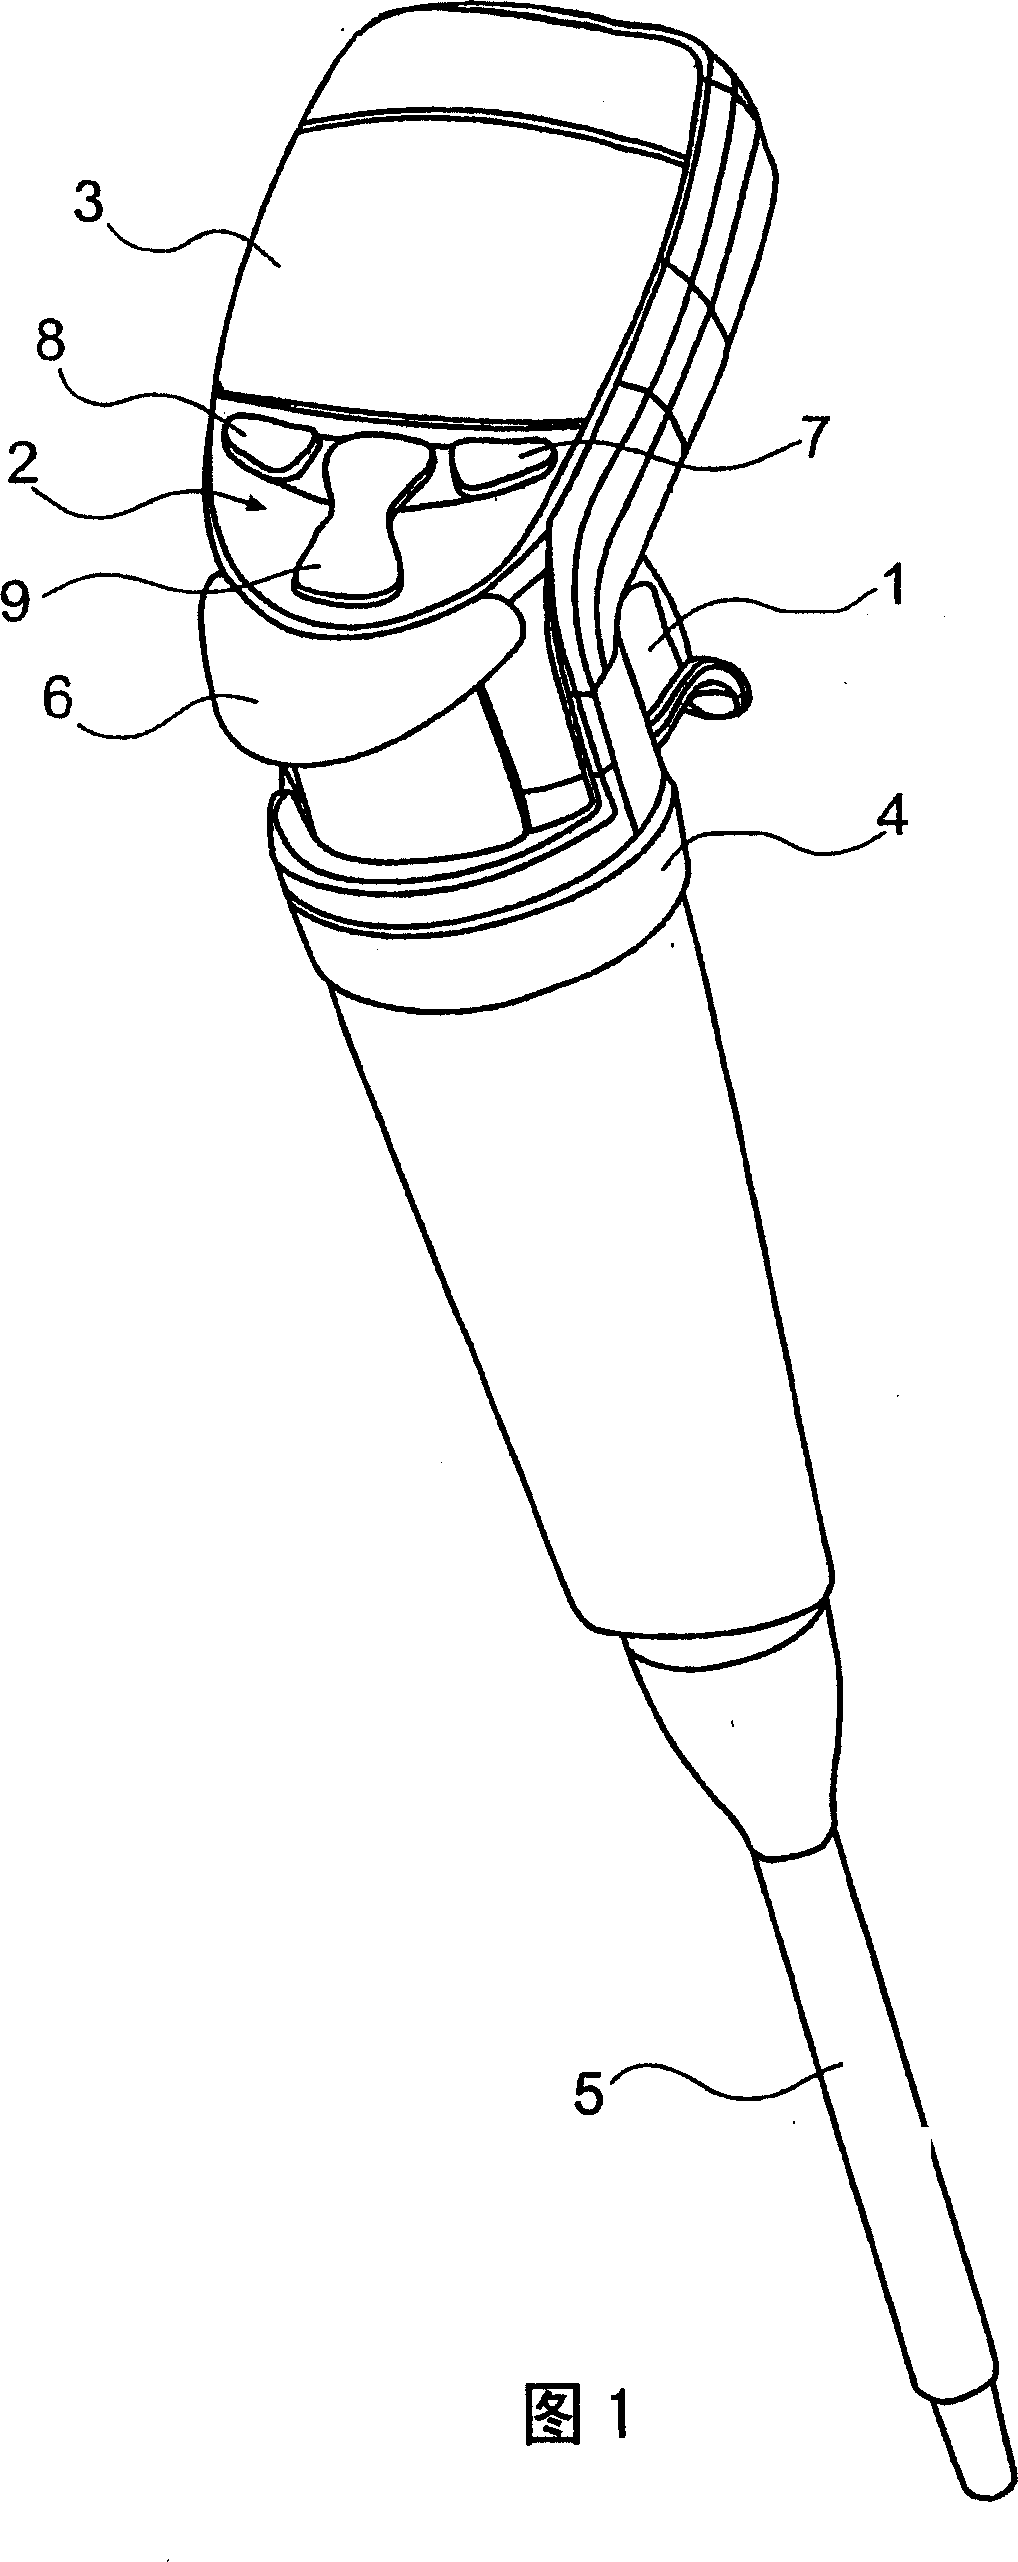 Calibration pipette